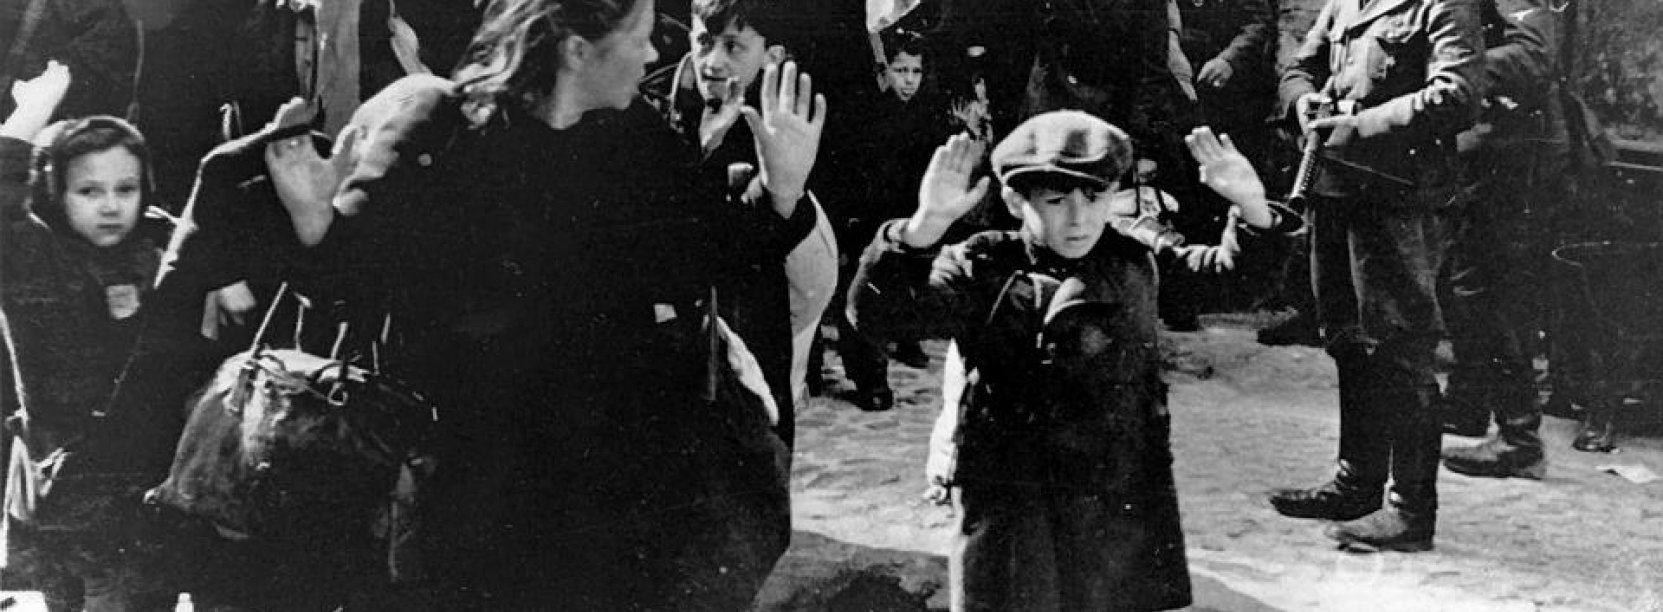 Zdjęcie archwiwalne, czarno-białe, przedstawia Żydów wypędzanych z mieszkań przez Niemców